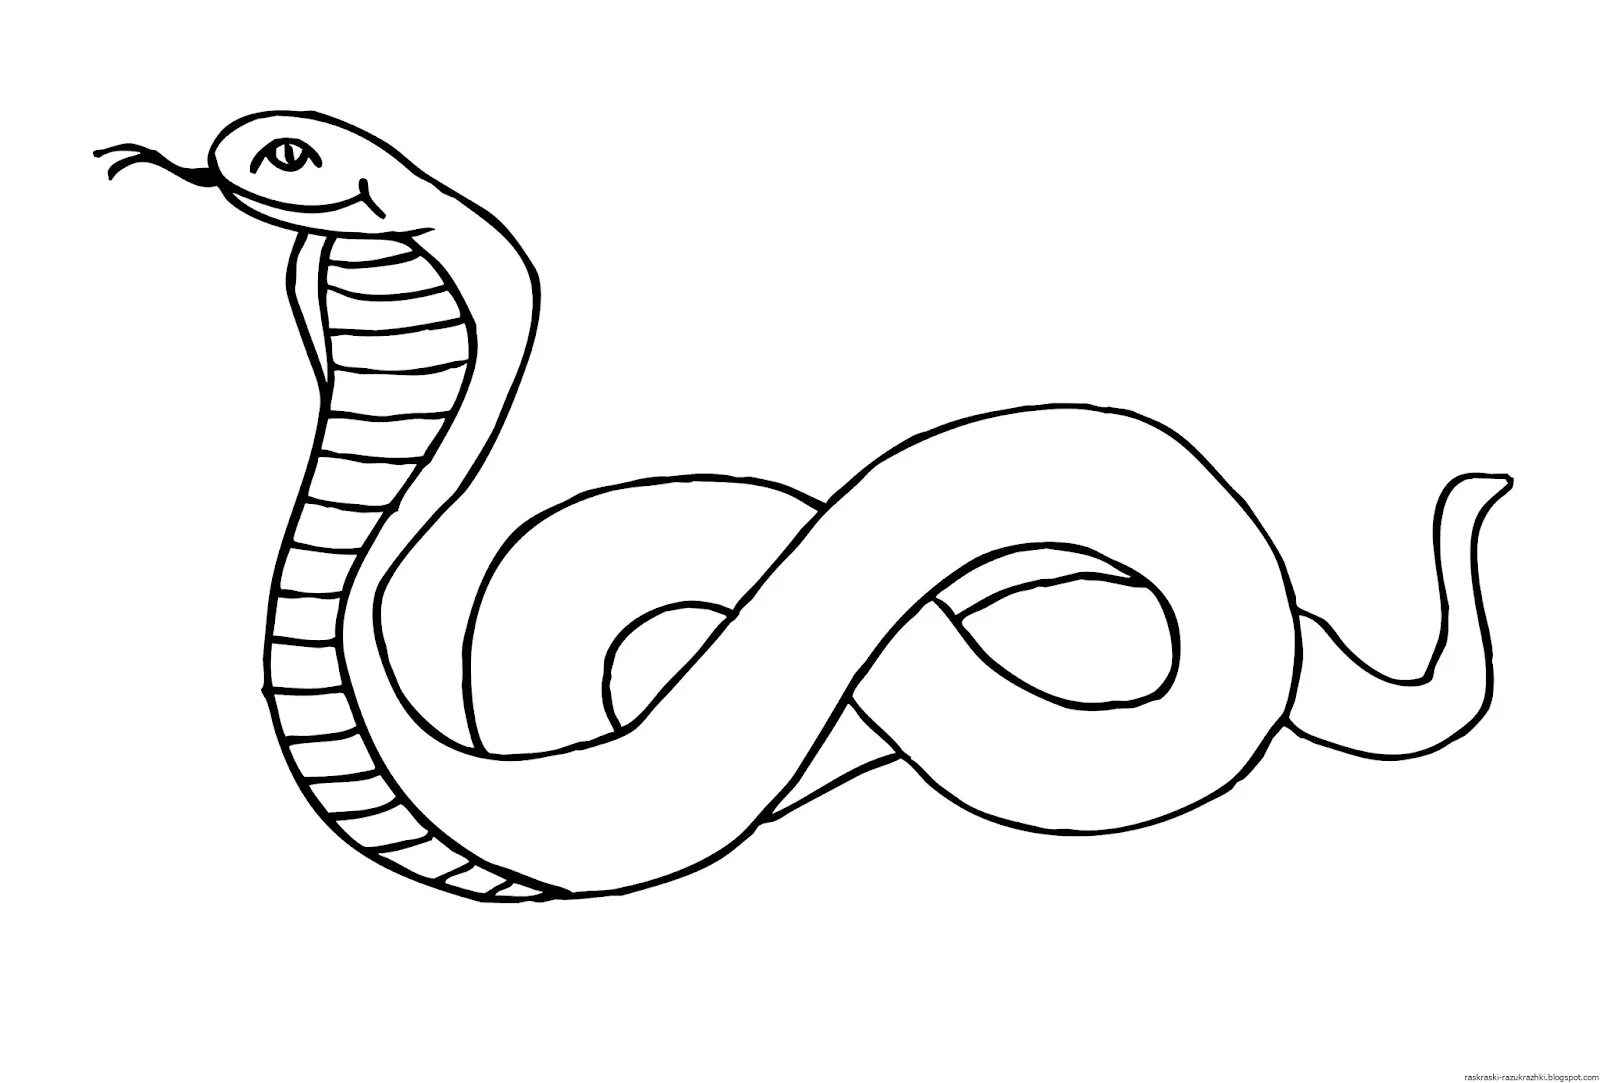 Раскраска змей для детей. Змея раскраска. Змея раскраска для детей. Раскраска змеи для детей. Картинка змеи раскраска.